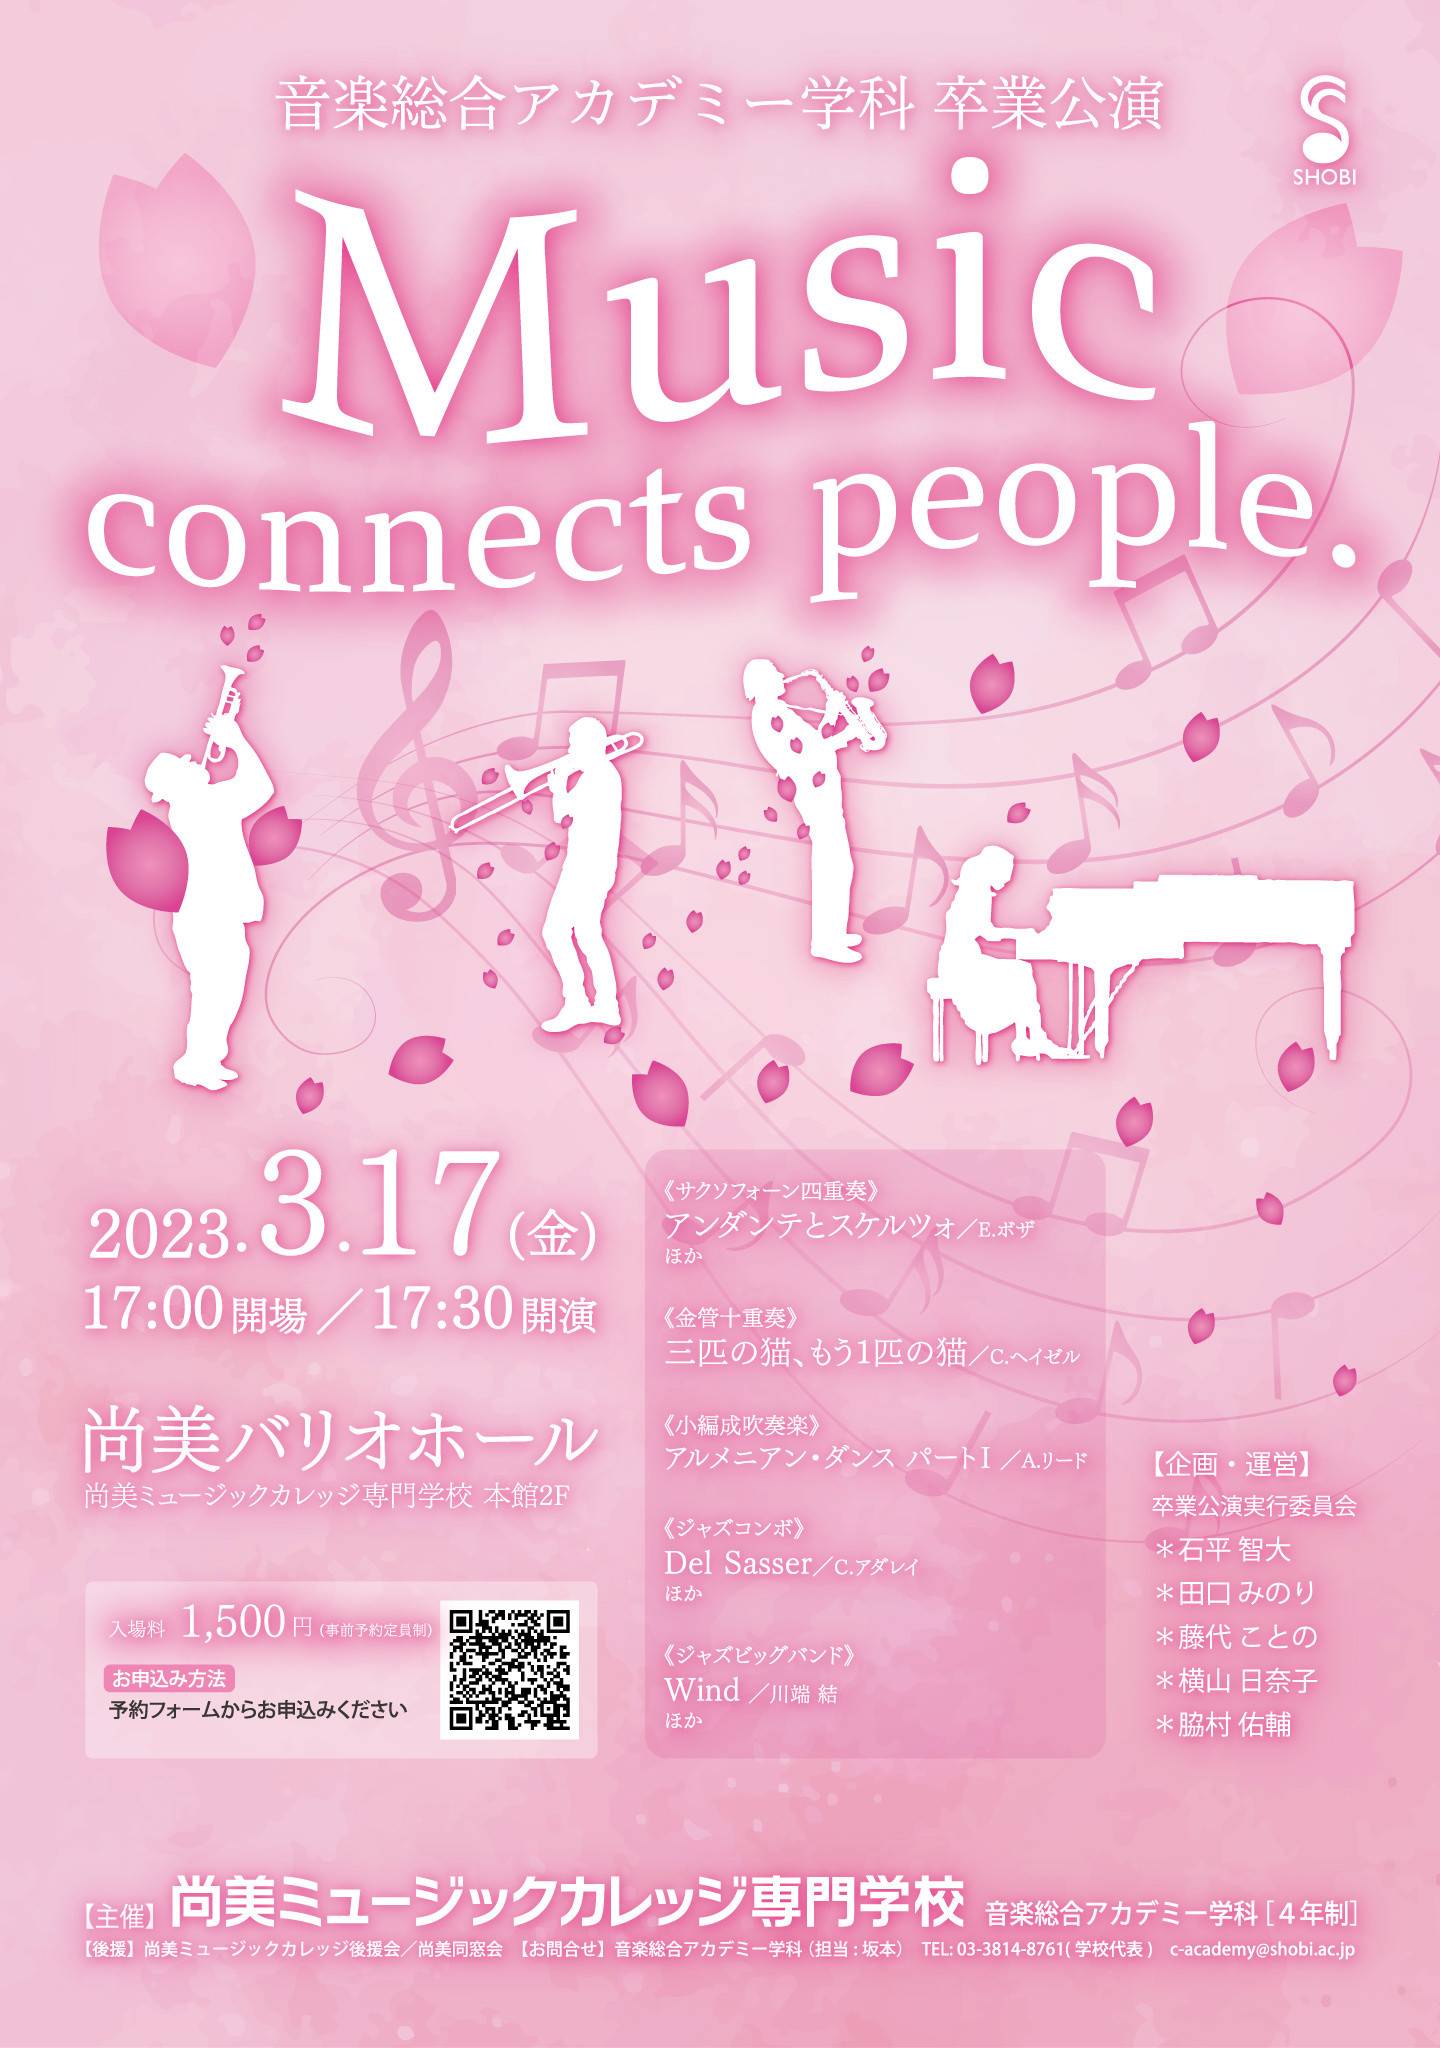 【3月17日開催】音楽総合アカデミー学科卒業公演「Music connects people.」